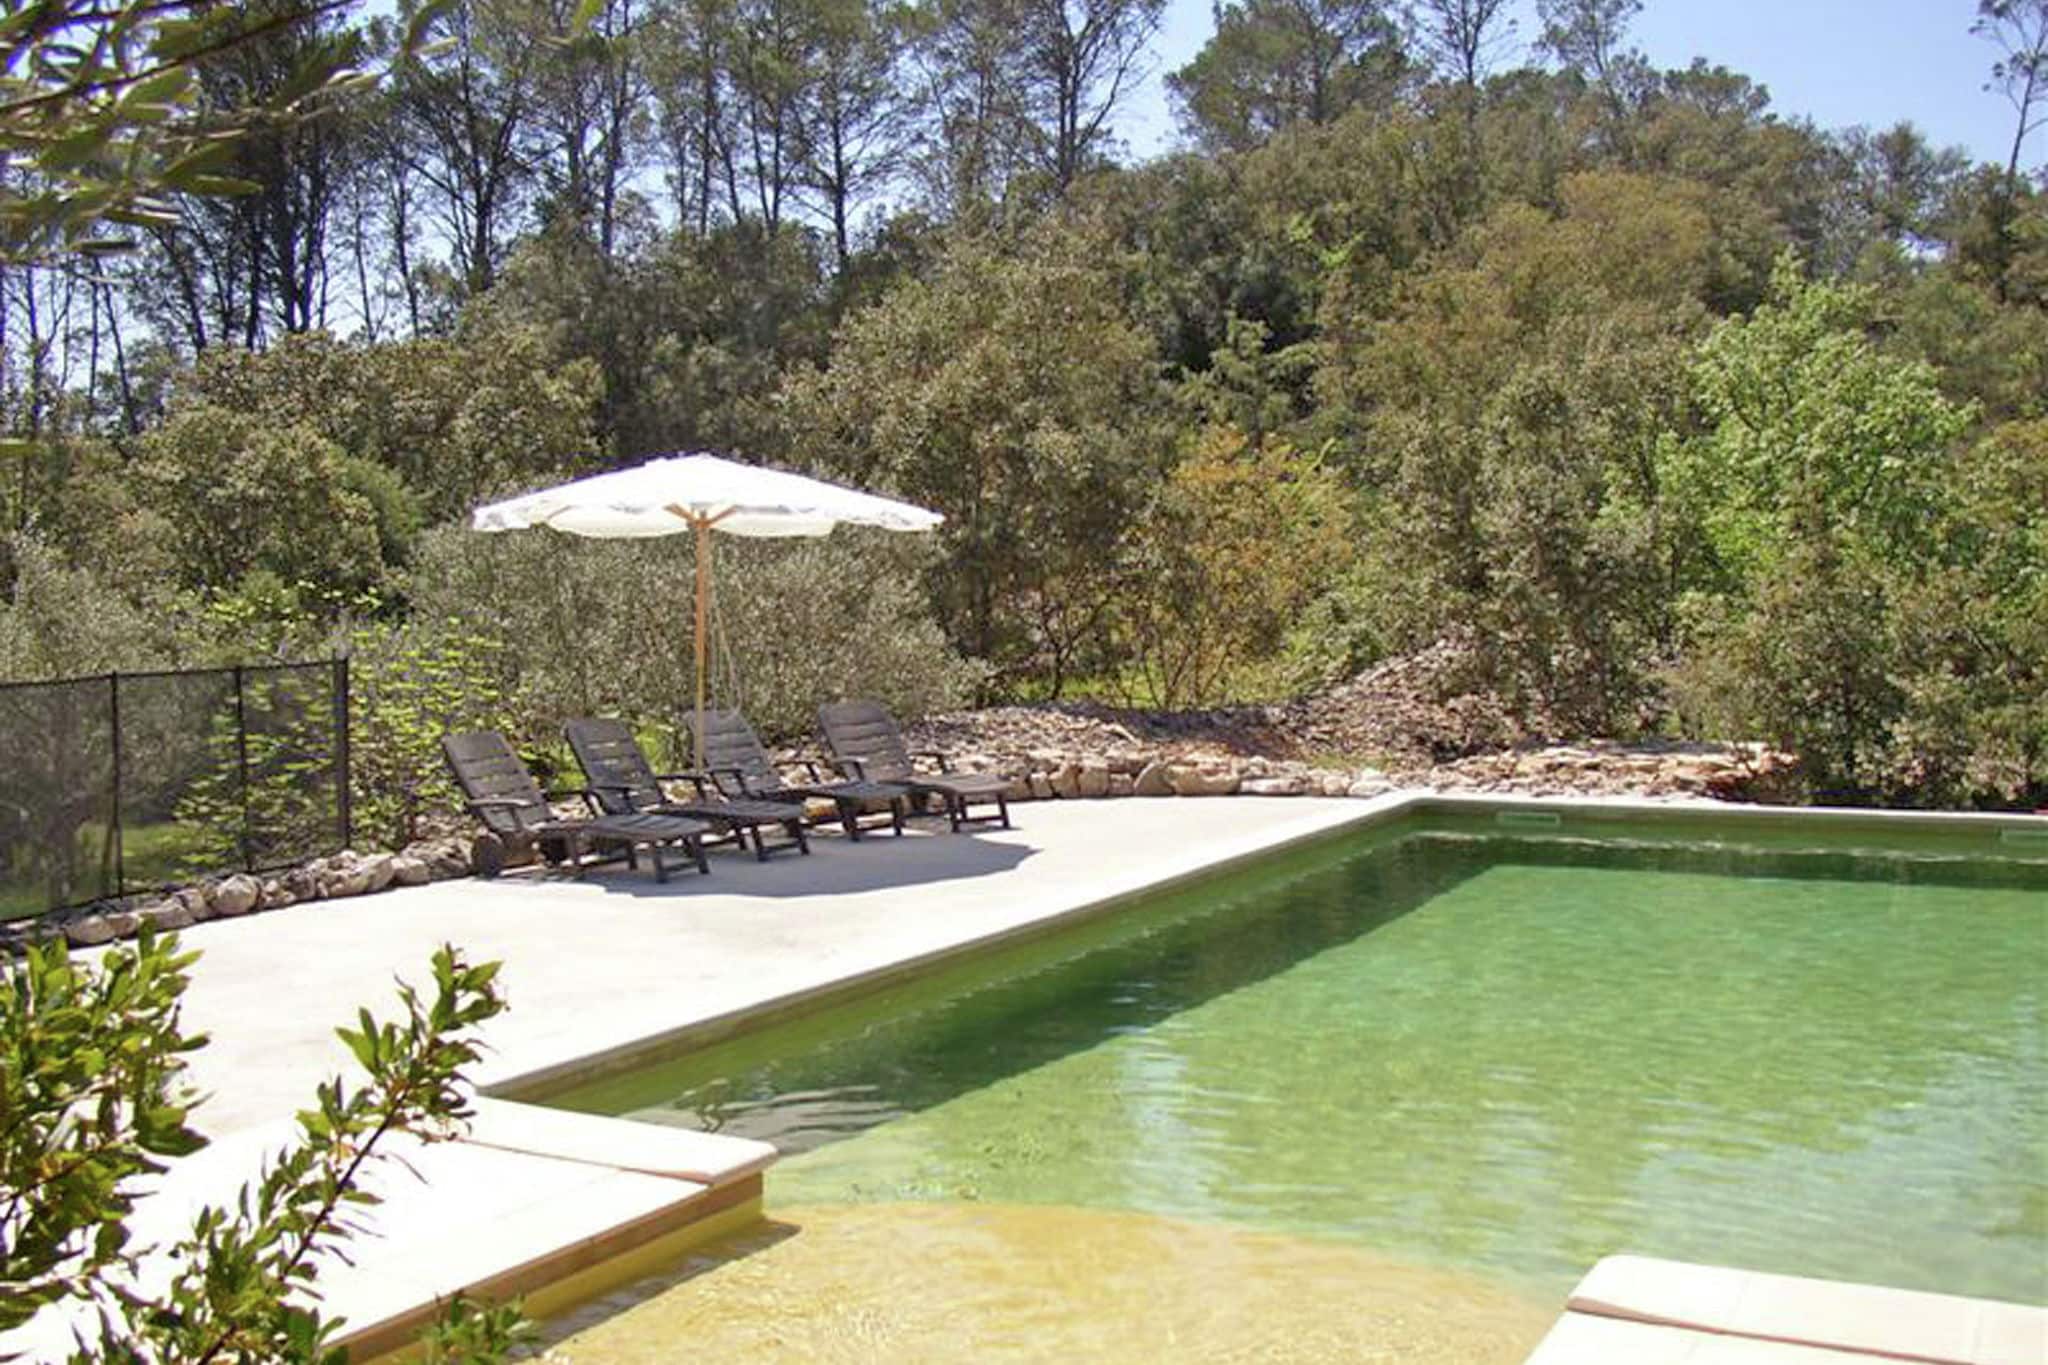 Propriété au calme près de Carcès avec piscine privée